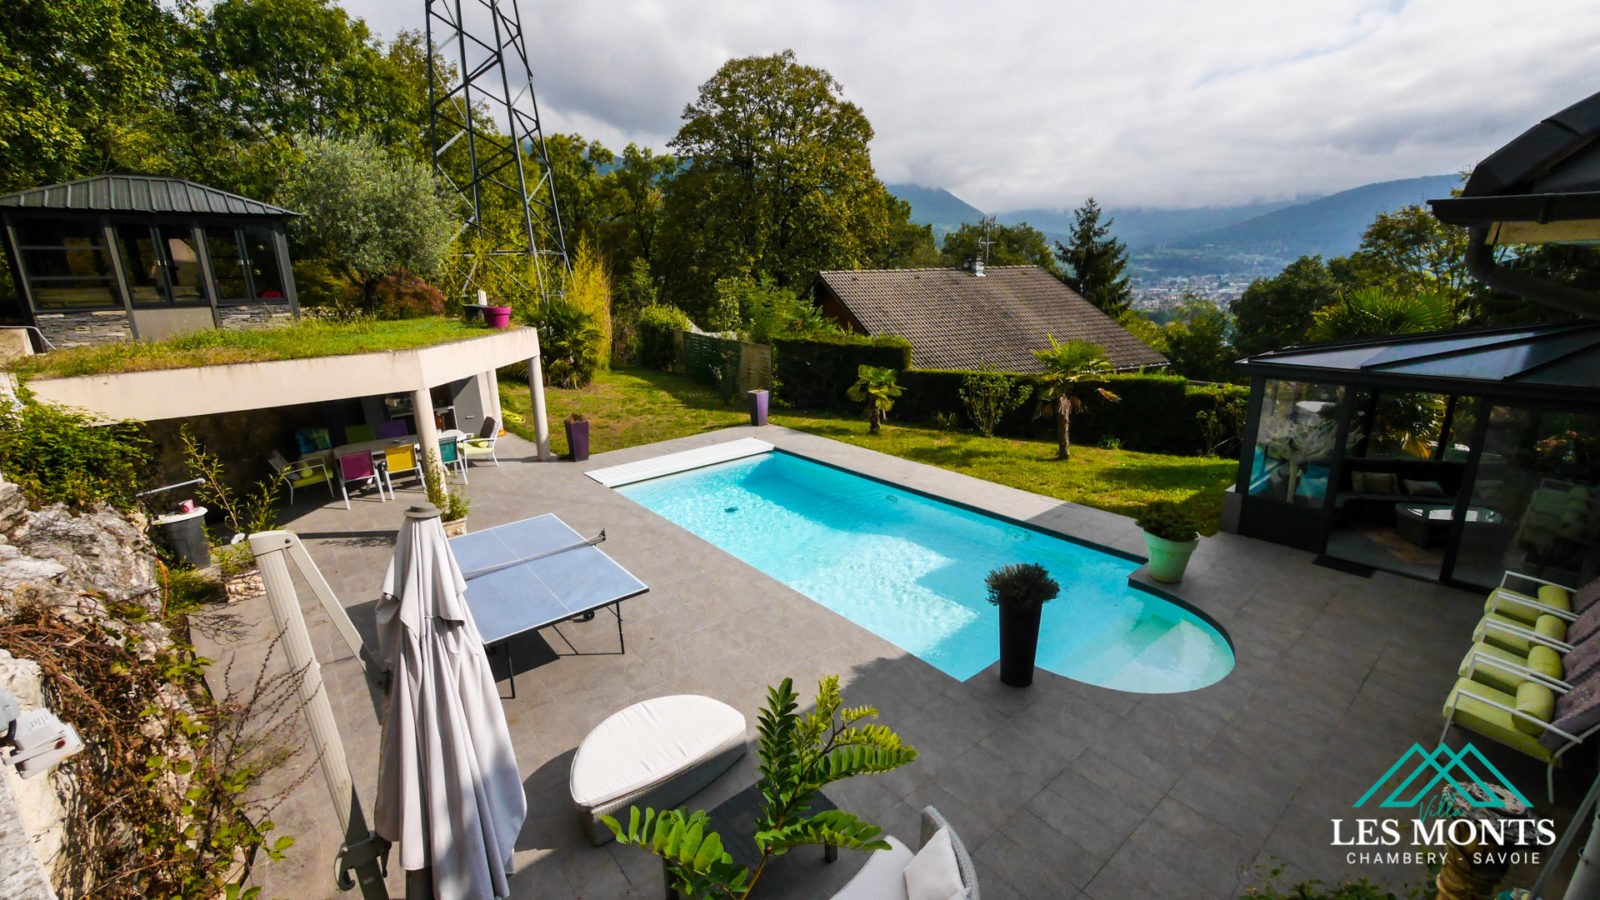 Photographie immobilière - Chambéry Savoie